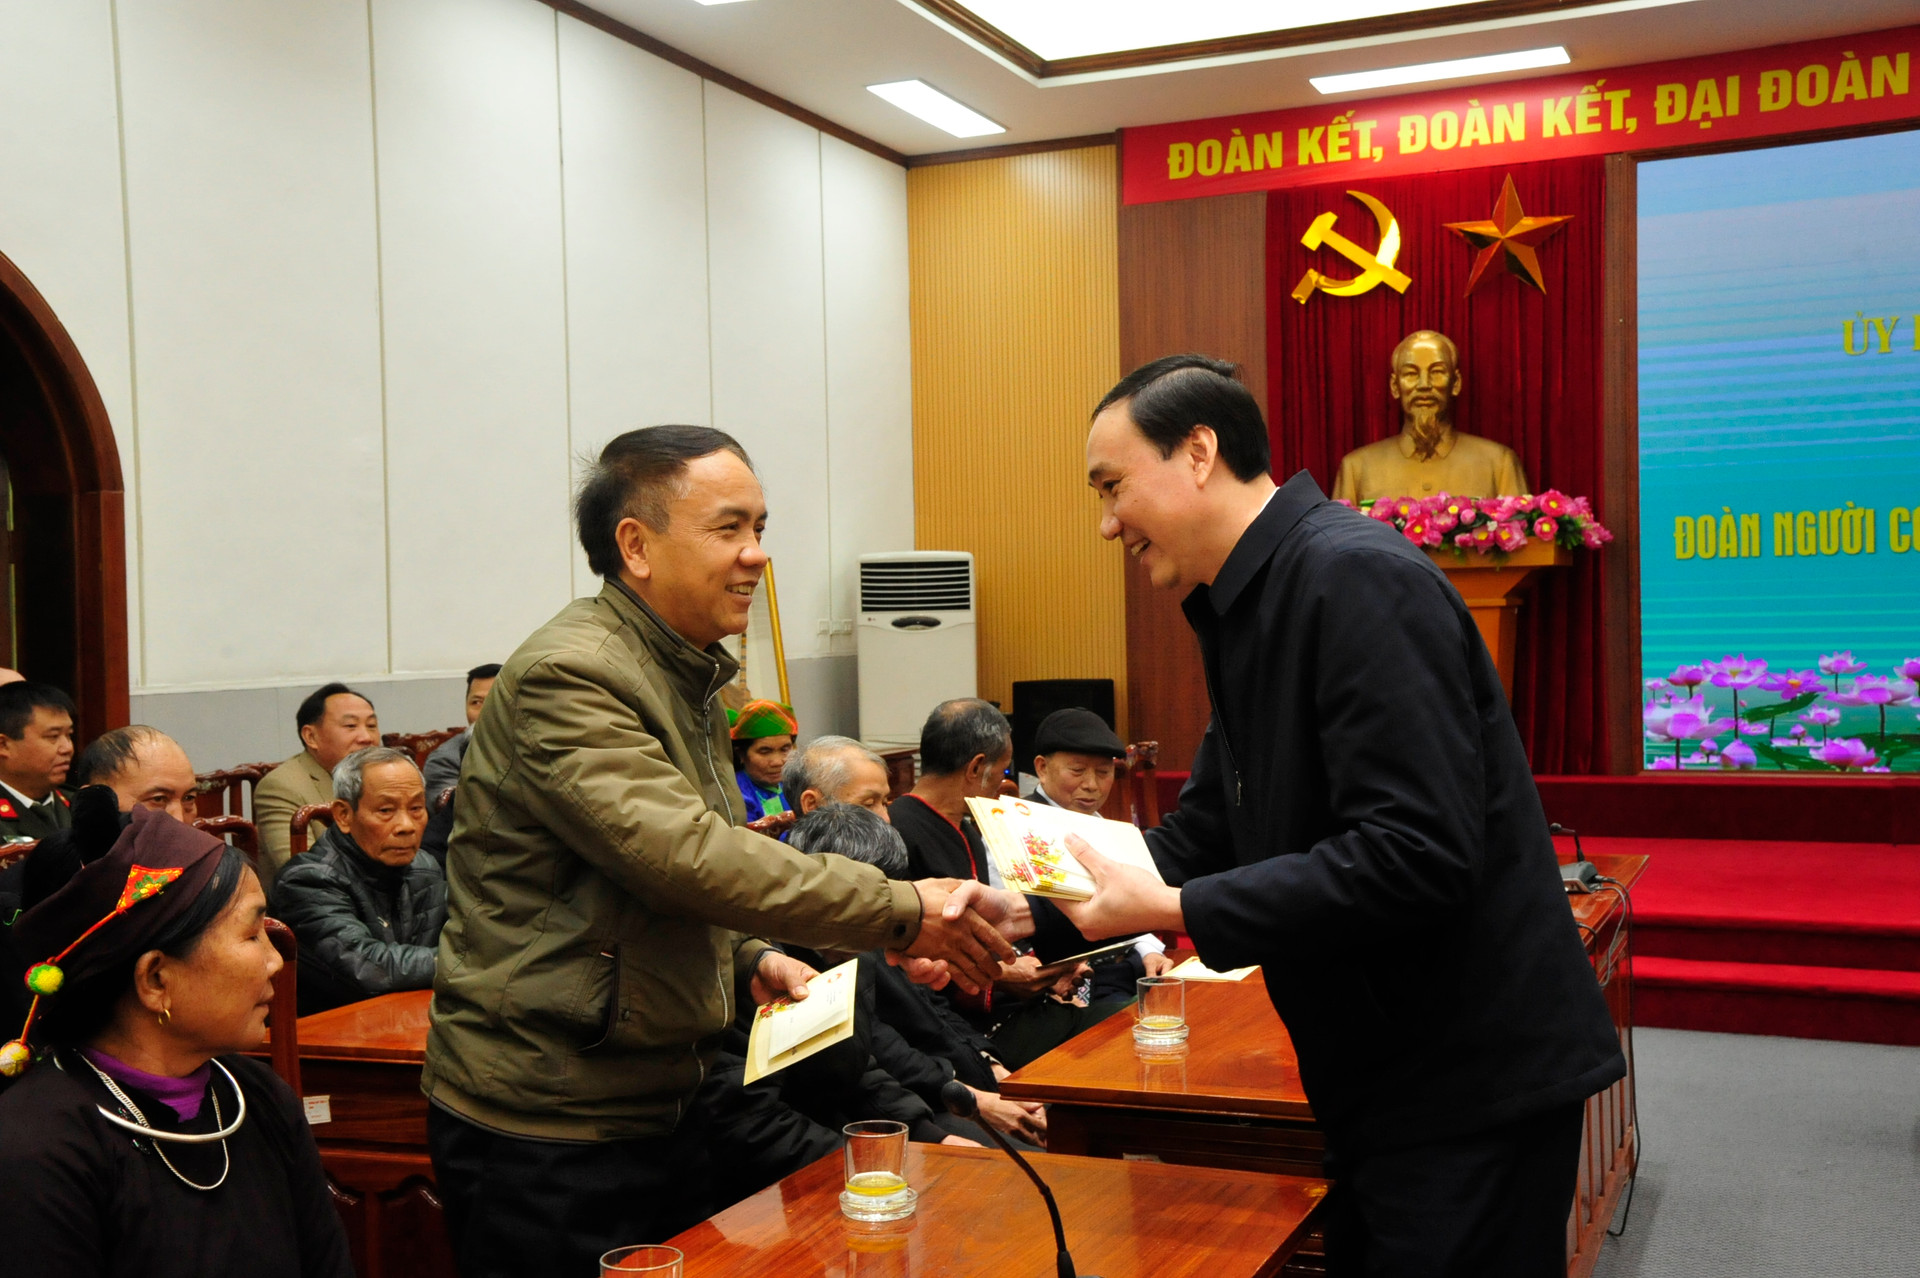 Phó Chủ tịch Phùng Khánh Tài tặng quà cho người uy tín tiêu biểu.